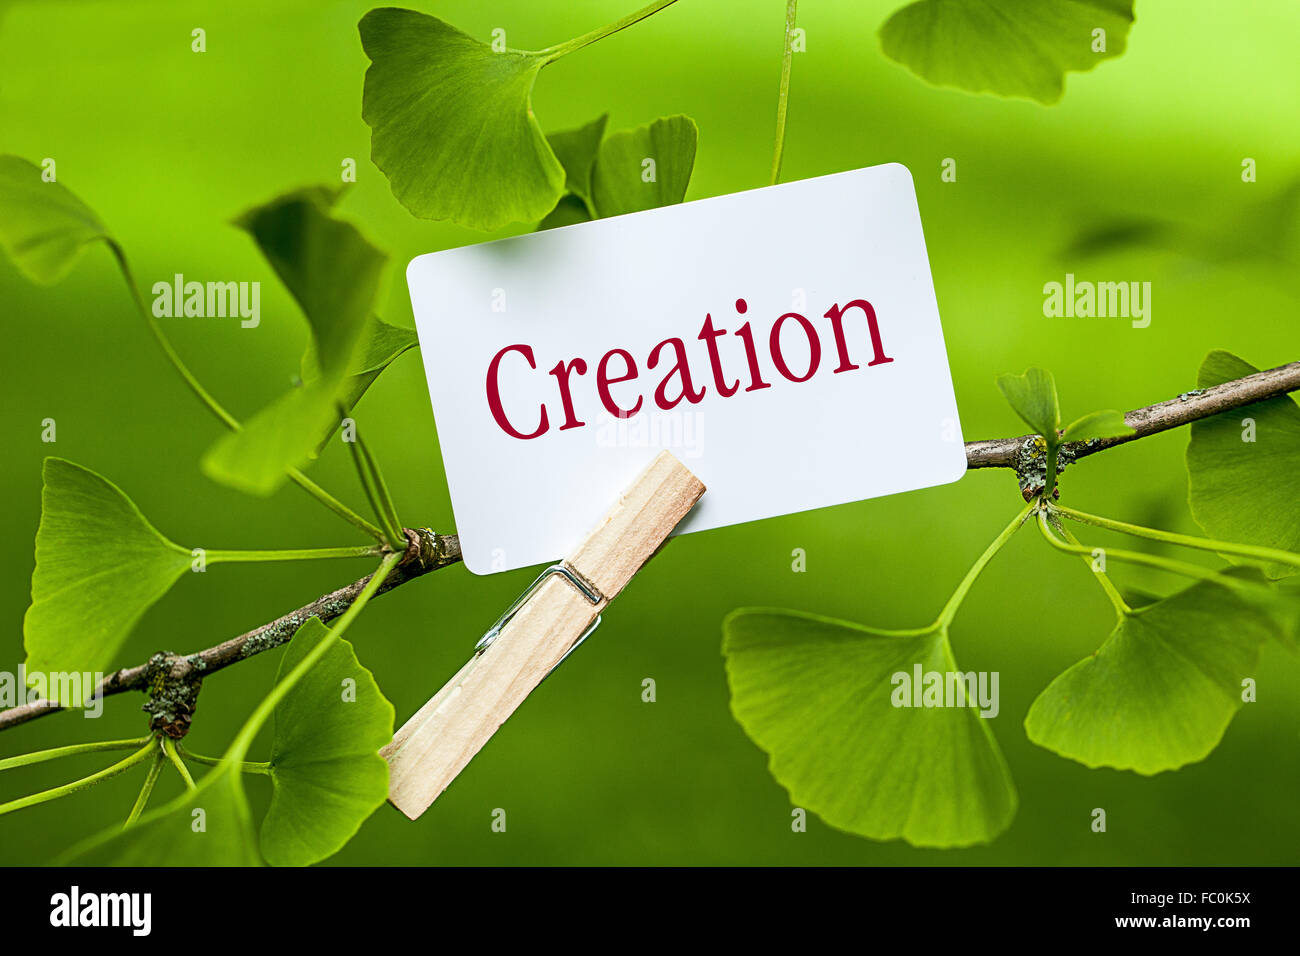 Das Wort "Schöpfung in einem Ginkgobaum Stockfoto